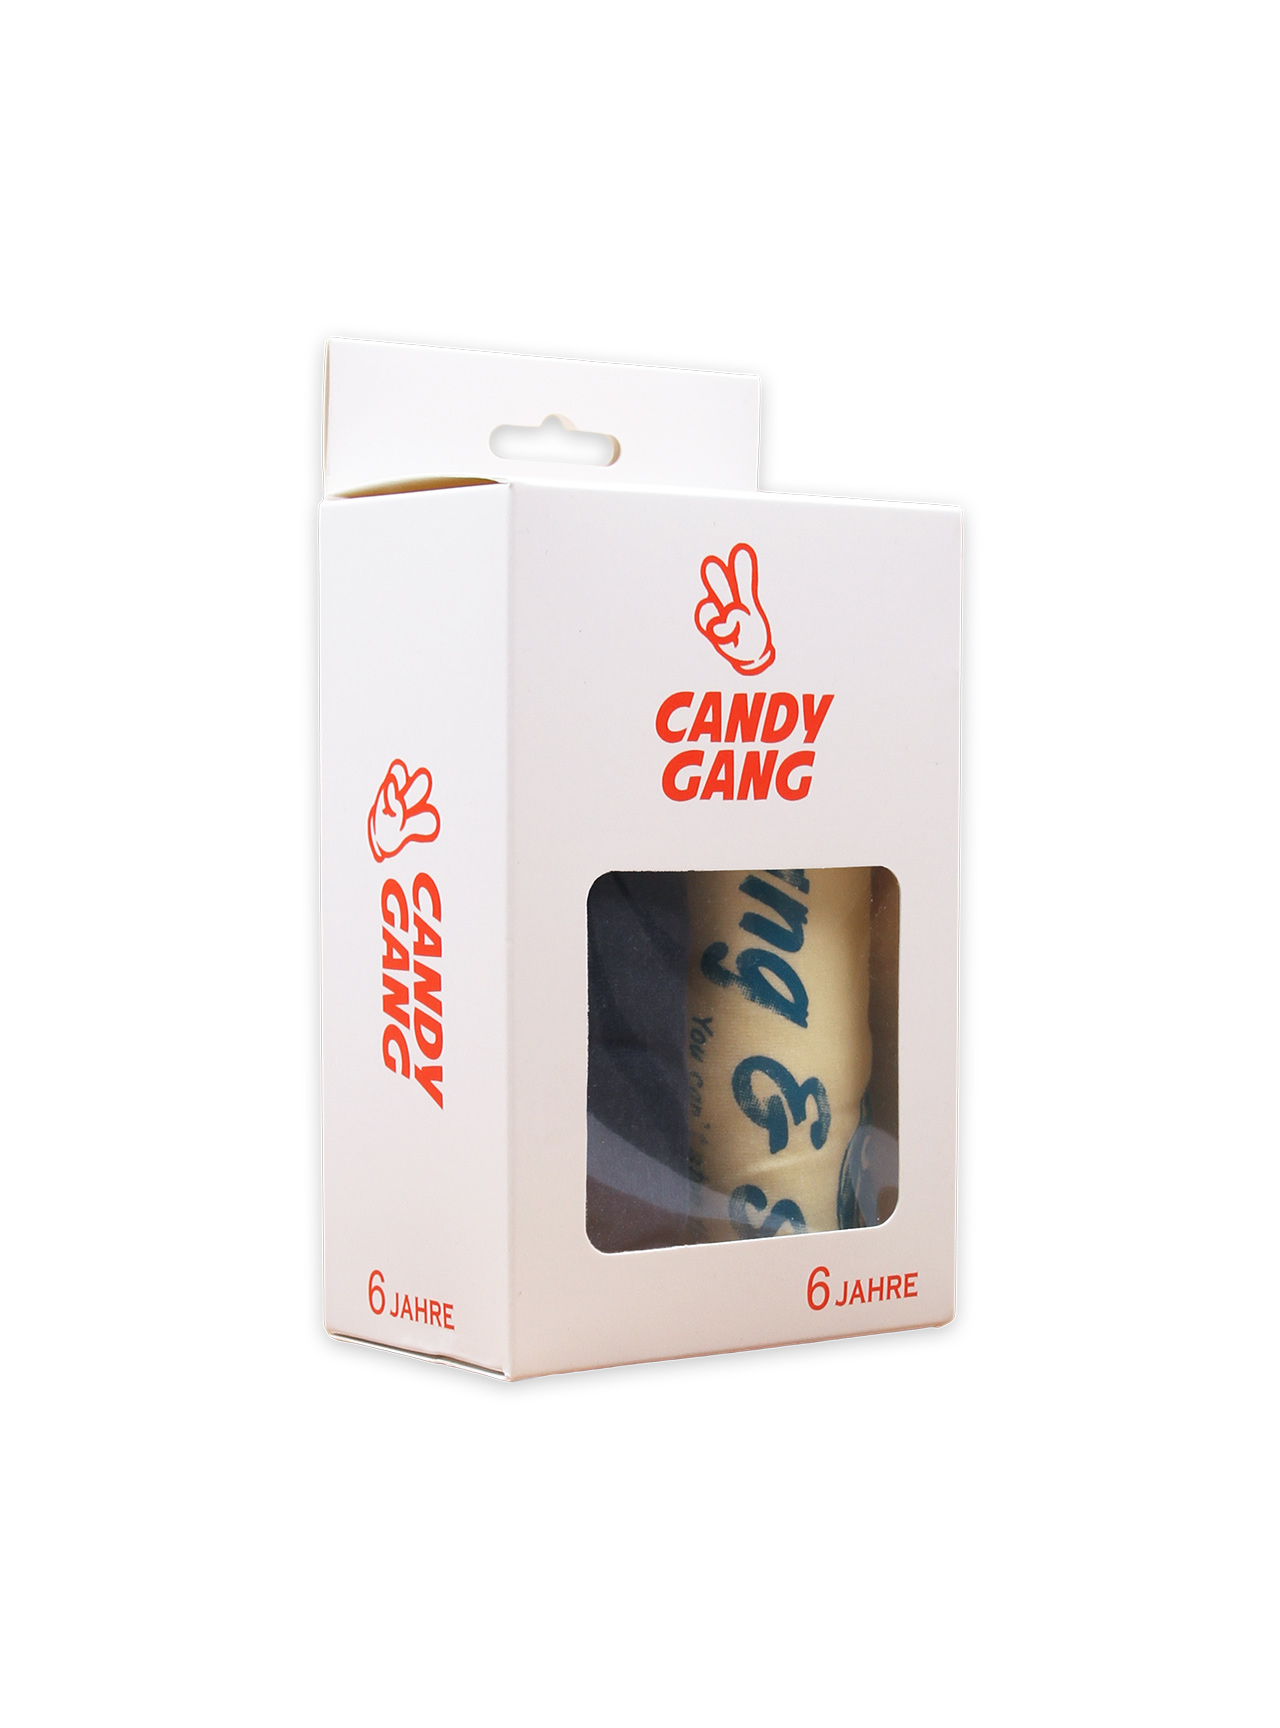 Dtsk trika CANDY GANG 2 ks v balen - box 8 - Kliknutm na obrzek zavete